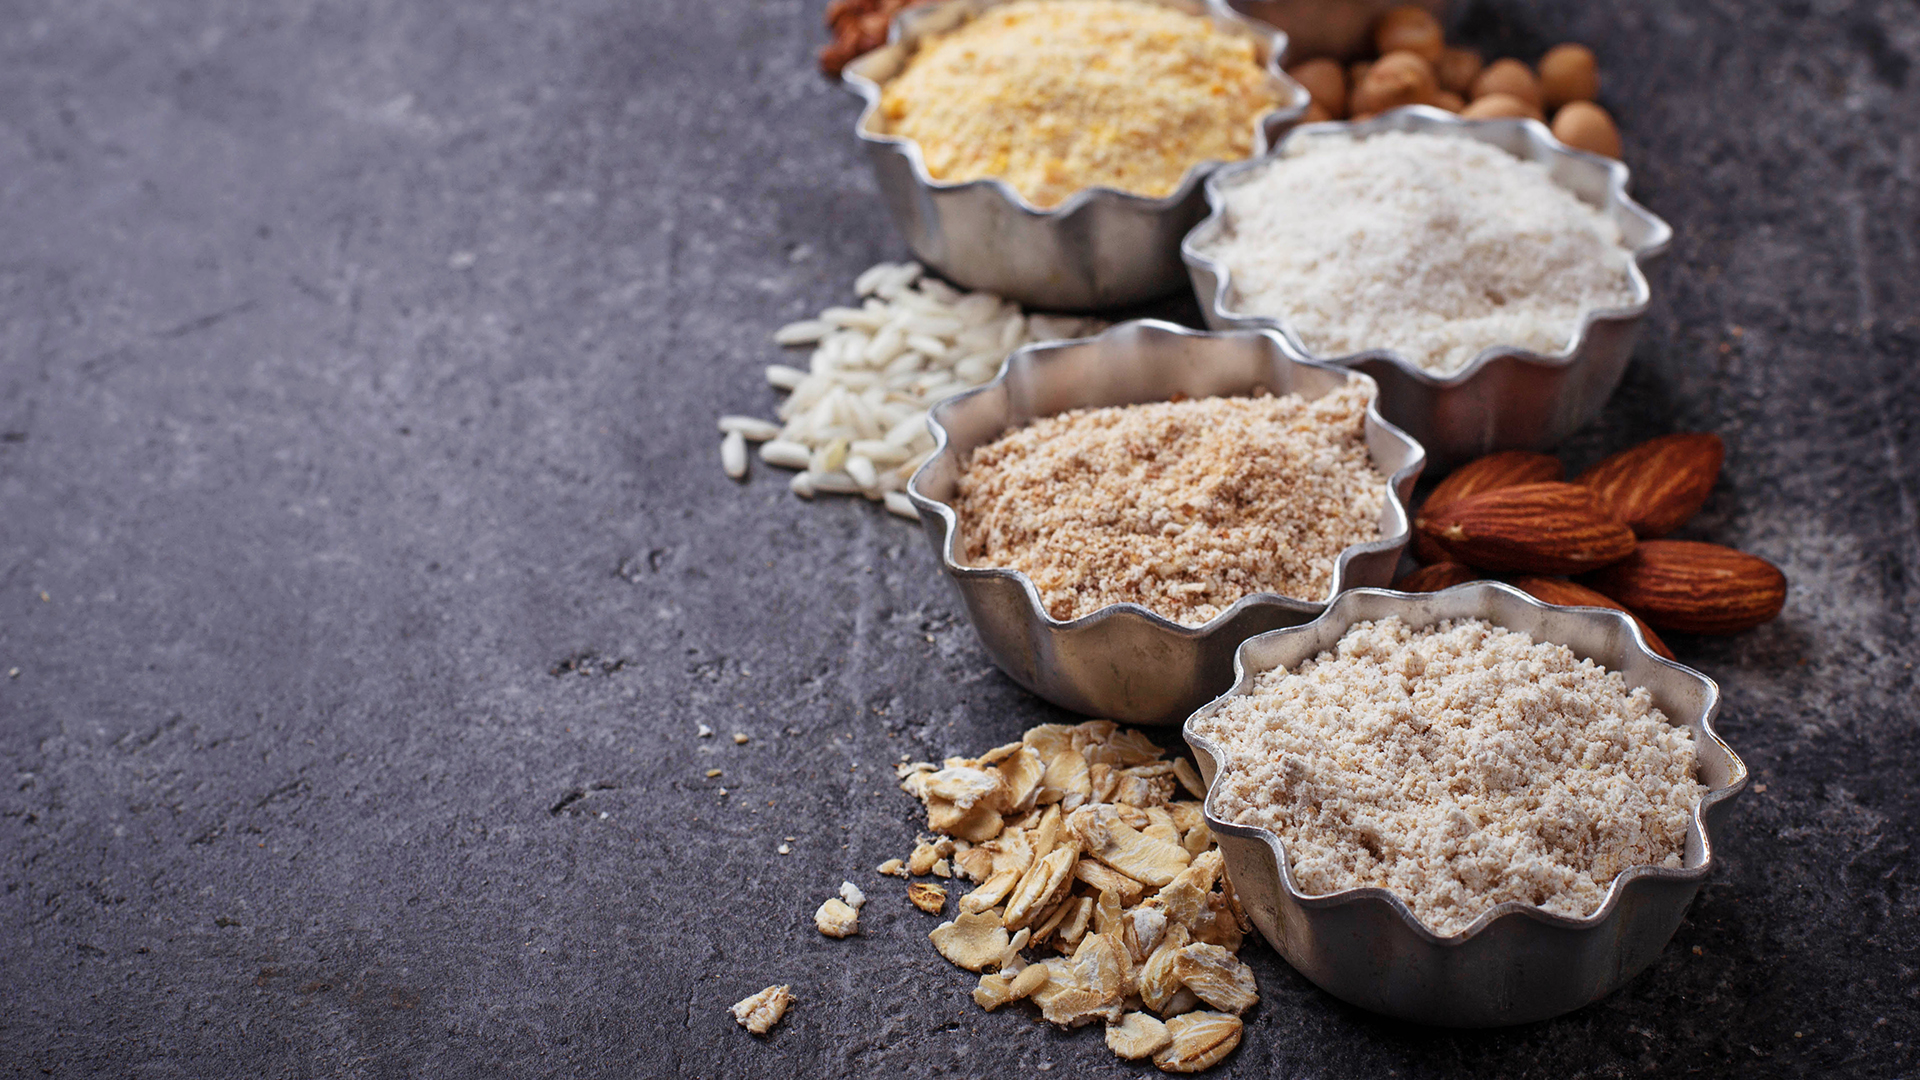 De almendras, de arroz, de garbanzos, algunas de las opciones de harina sin gluten (Getty)